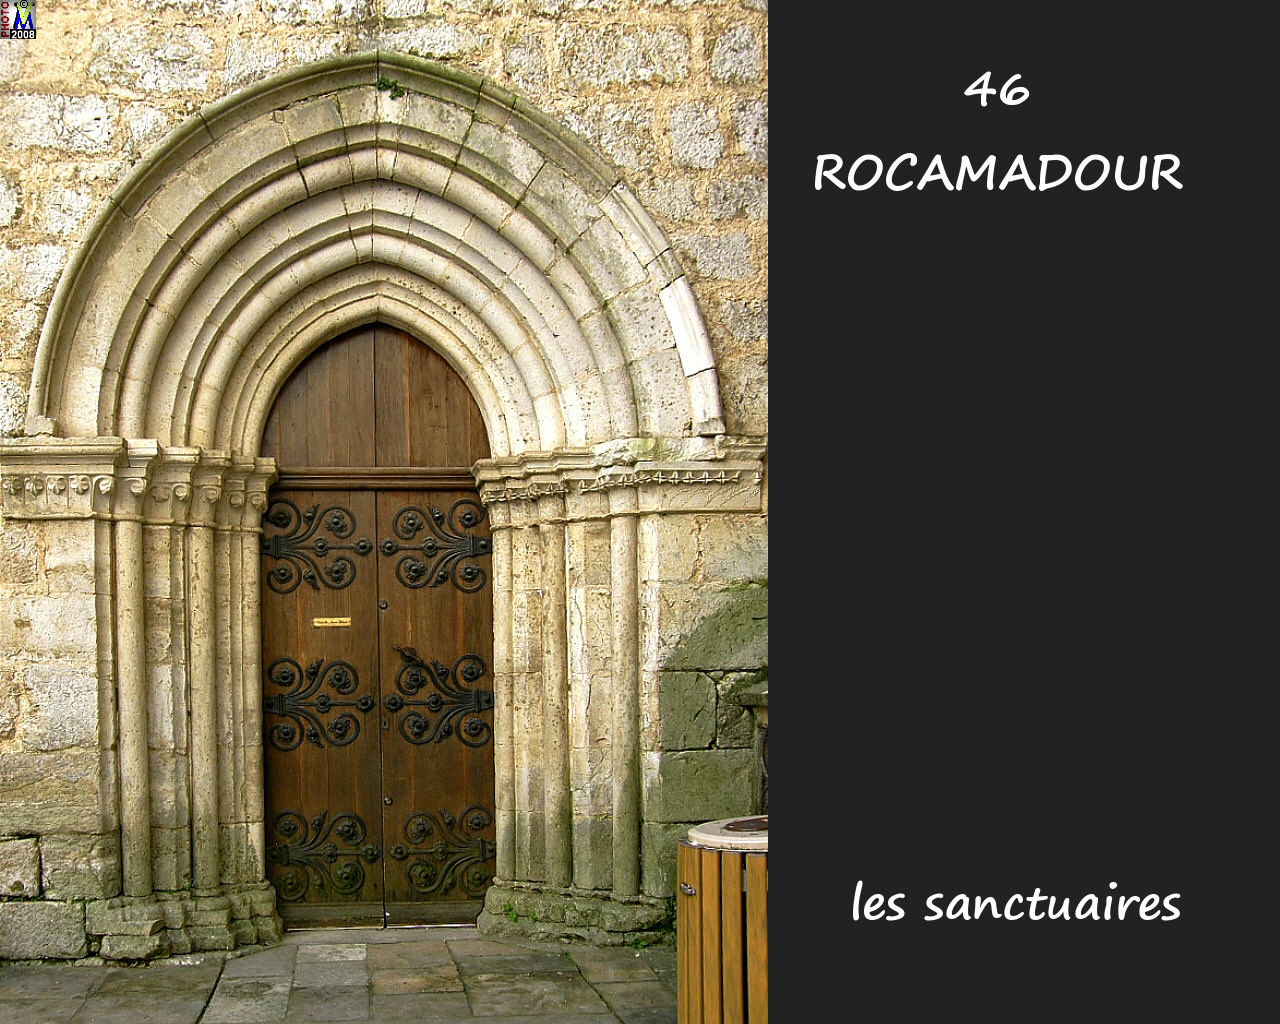 46ROCAMADOUR_sanctuaires_260.jpg